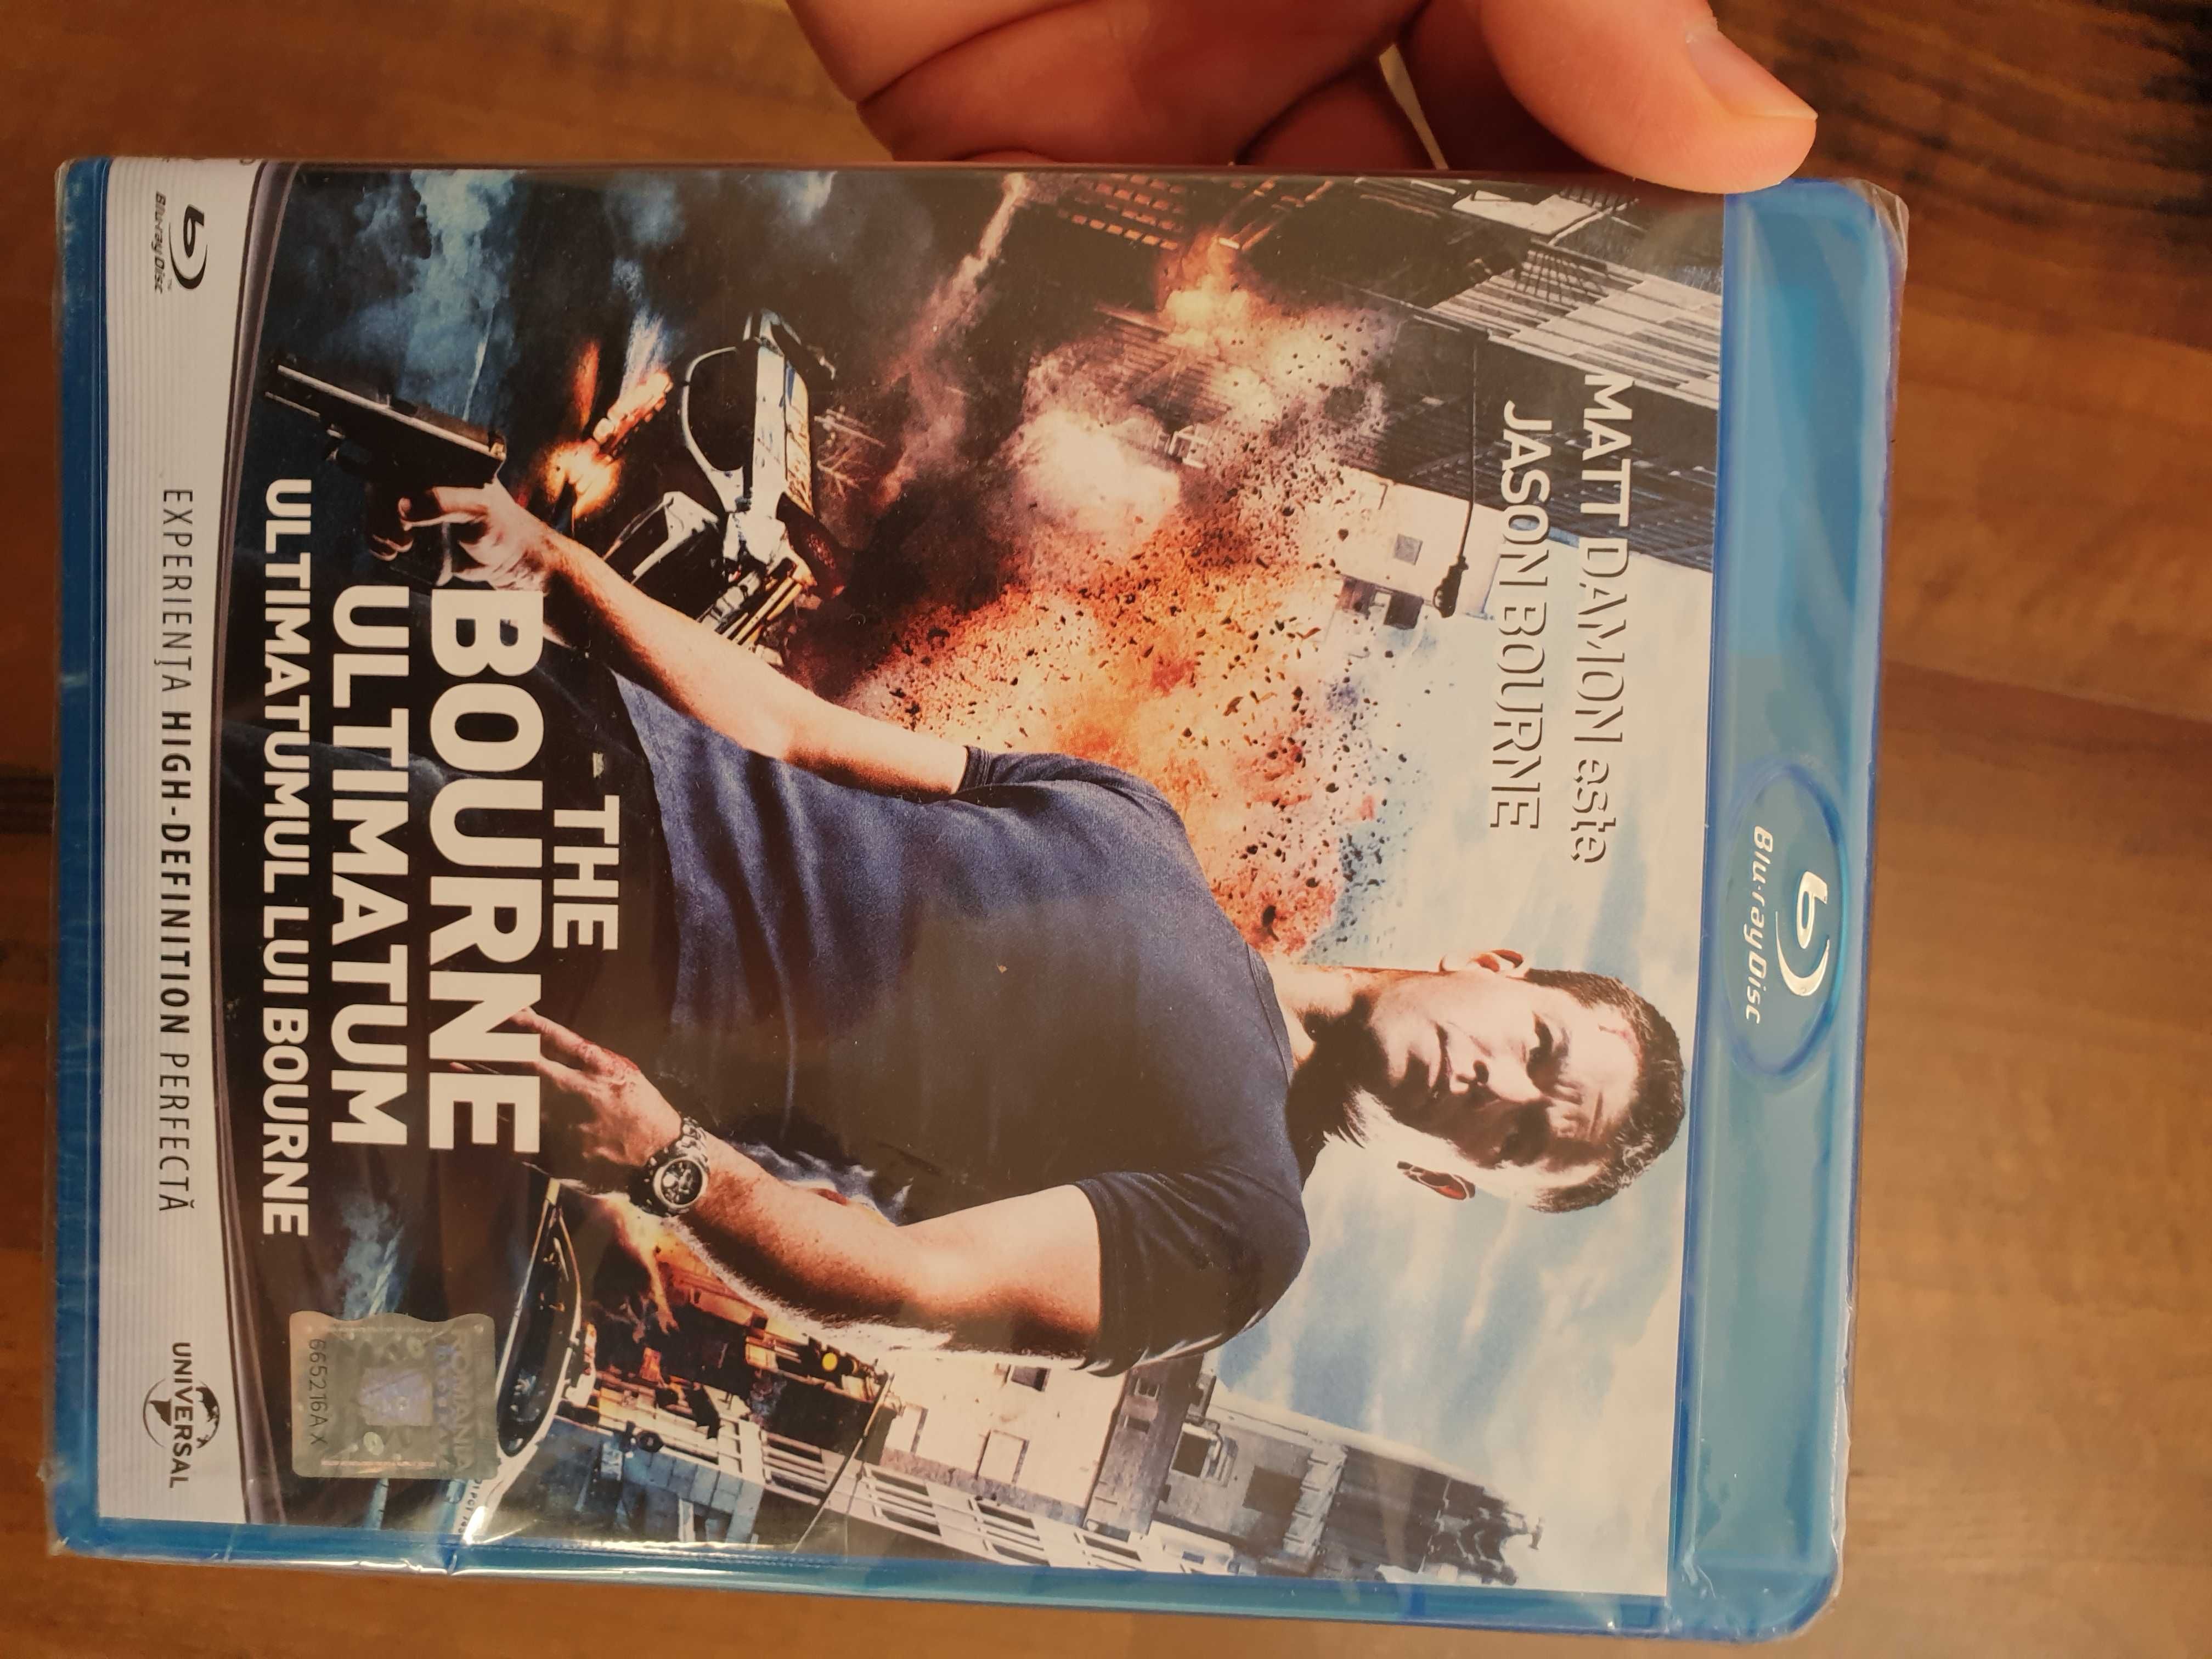 Ultimatumul lui Bourne Blu Ray